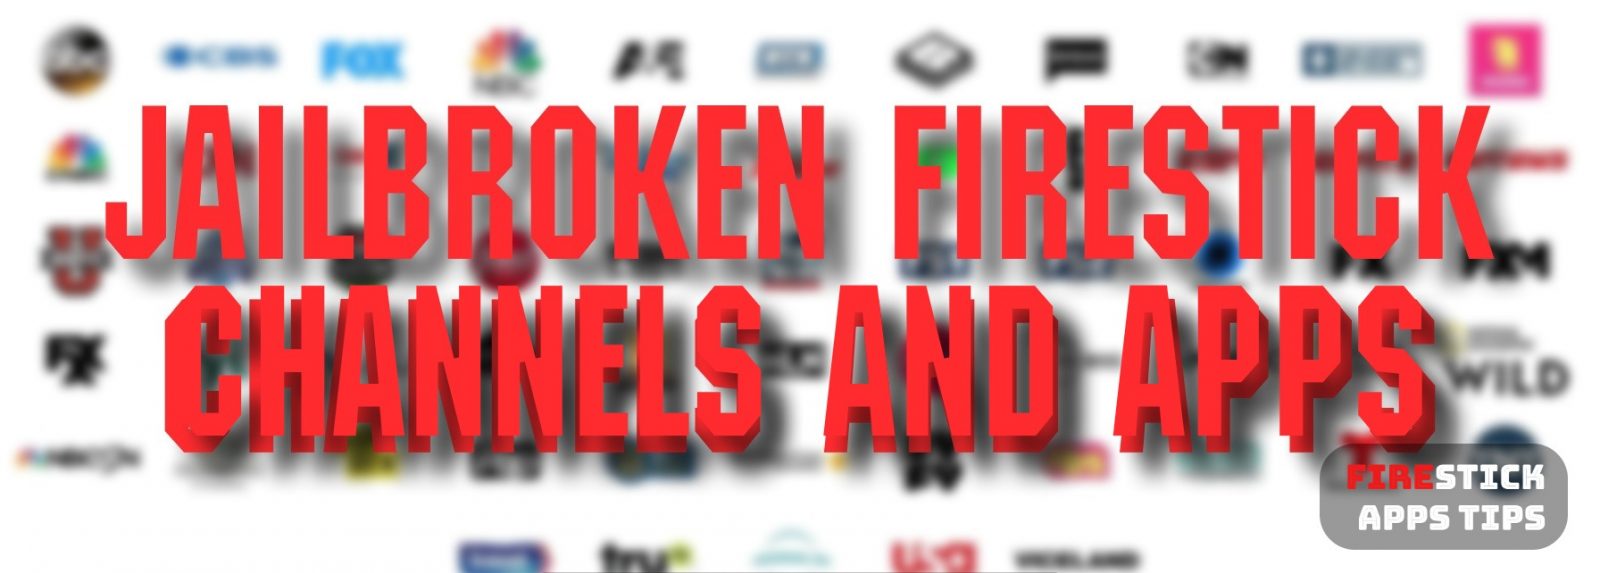 Best Jailbroken Firestick Channels and Apps [2021]